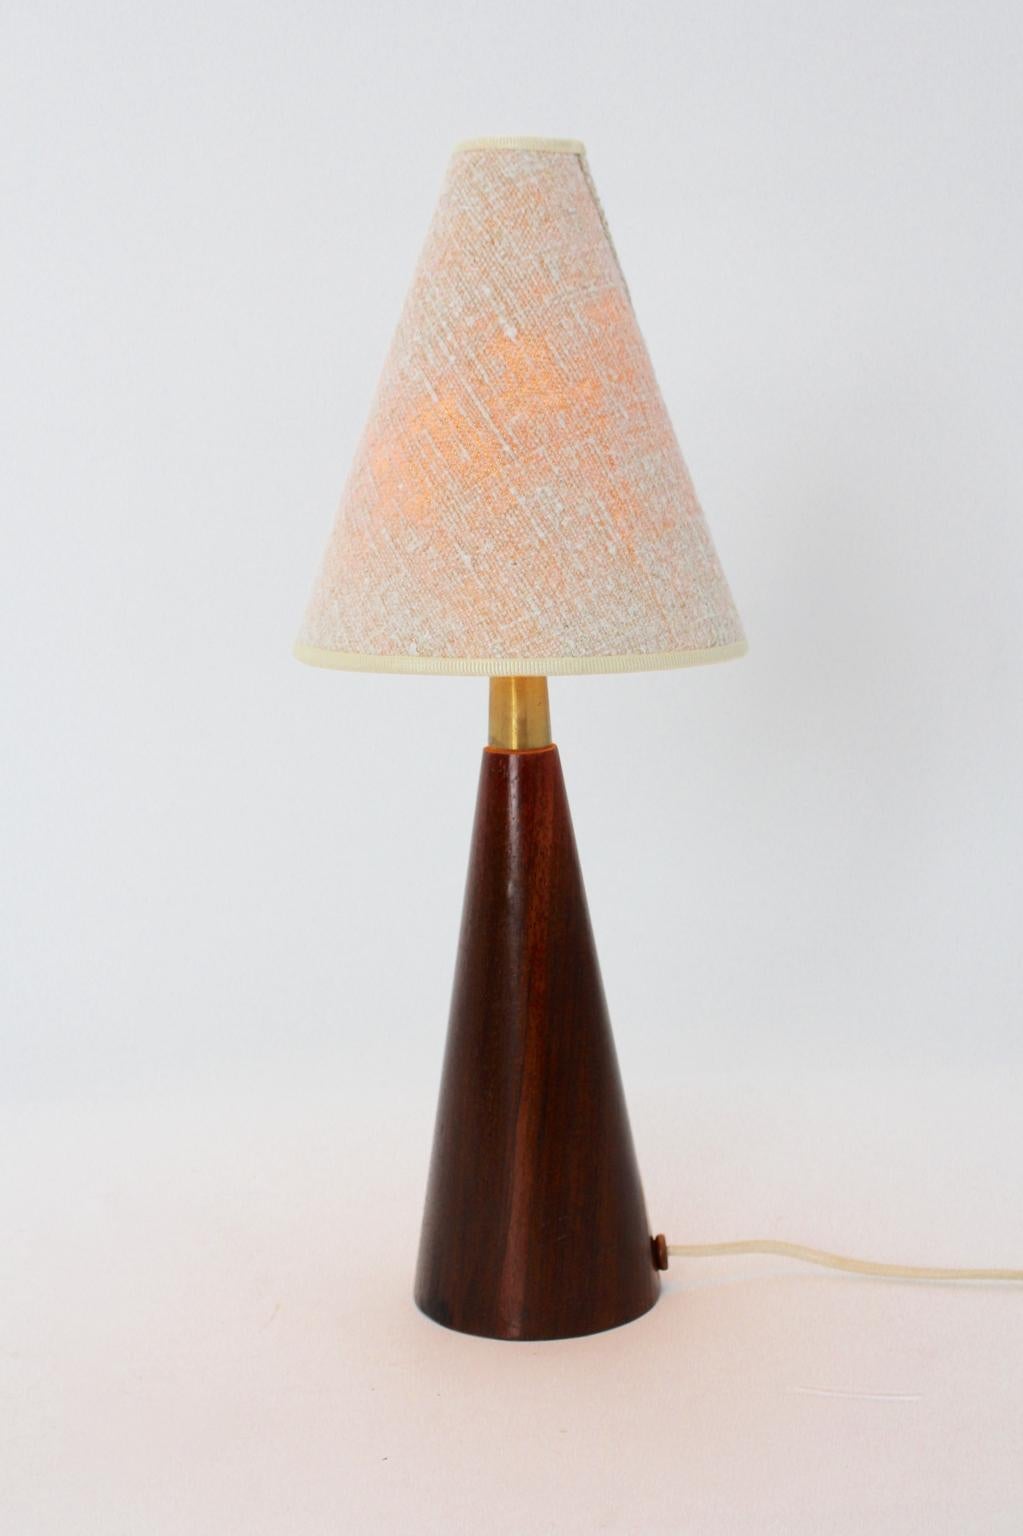 Lampe de table organique de style scandinave moderne et vintage, avec une base en teck de forme conique et un abat-jour en toile blanc cassé.
En outre, la lampe de table est équipée d'une douille E 27 et d'un interrupteur marche/arrêt.
La base en